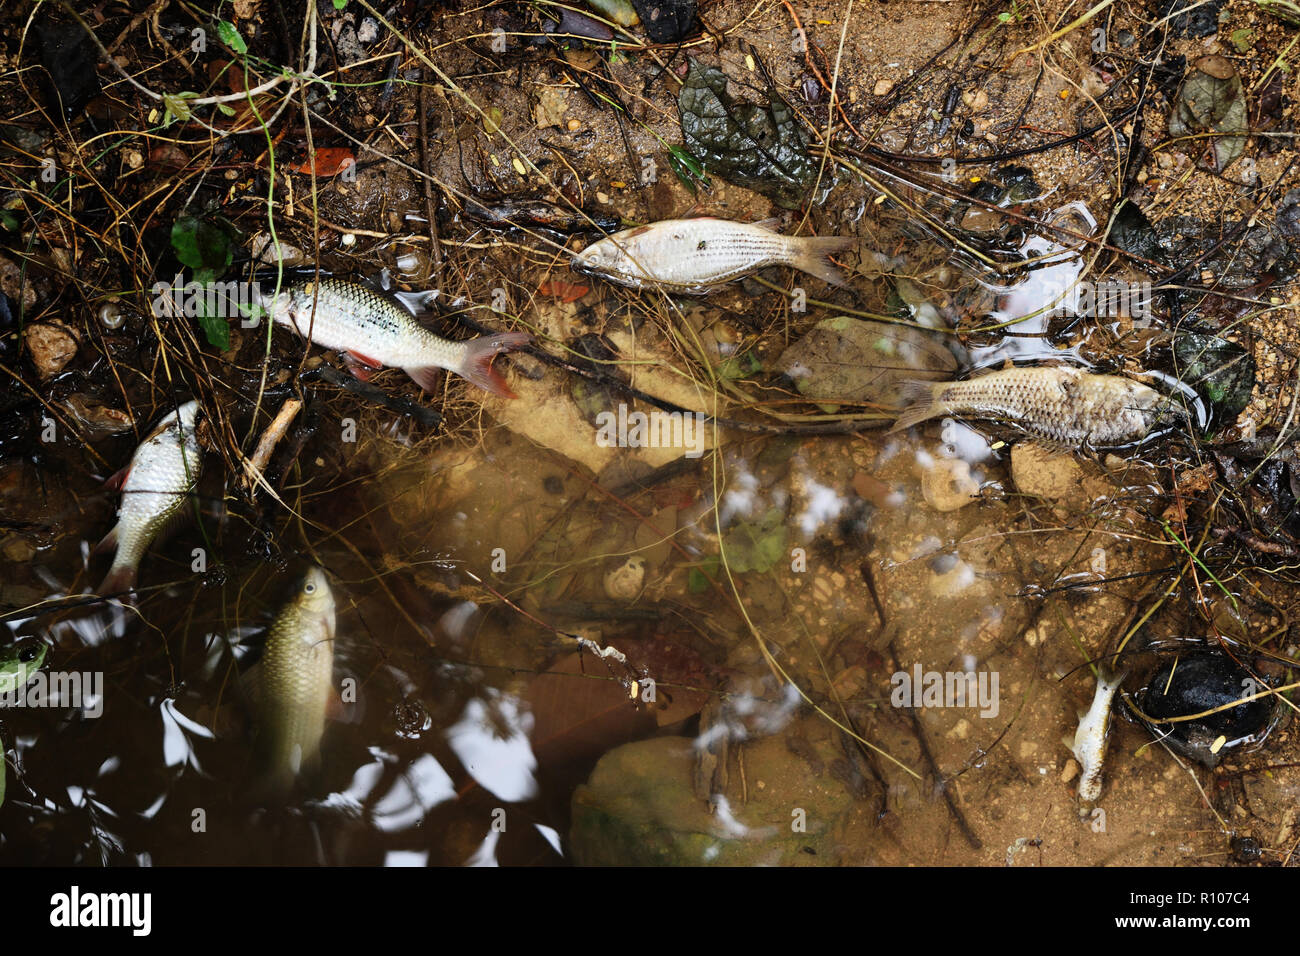 Molti pesci morti in flottante , delle acque reflue industriali e di inquinamento che danneggia l'ambiente naturale Foto Stock